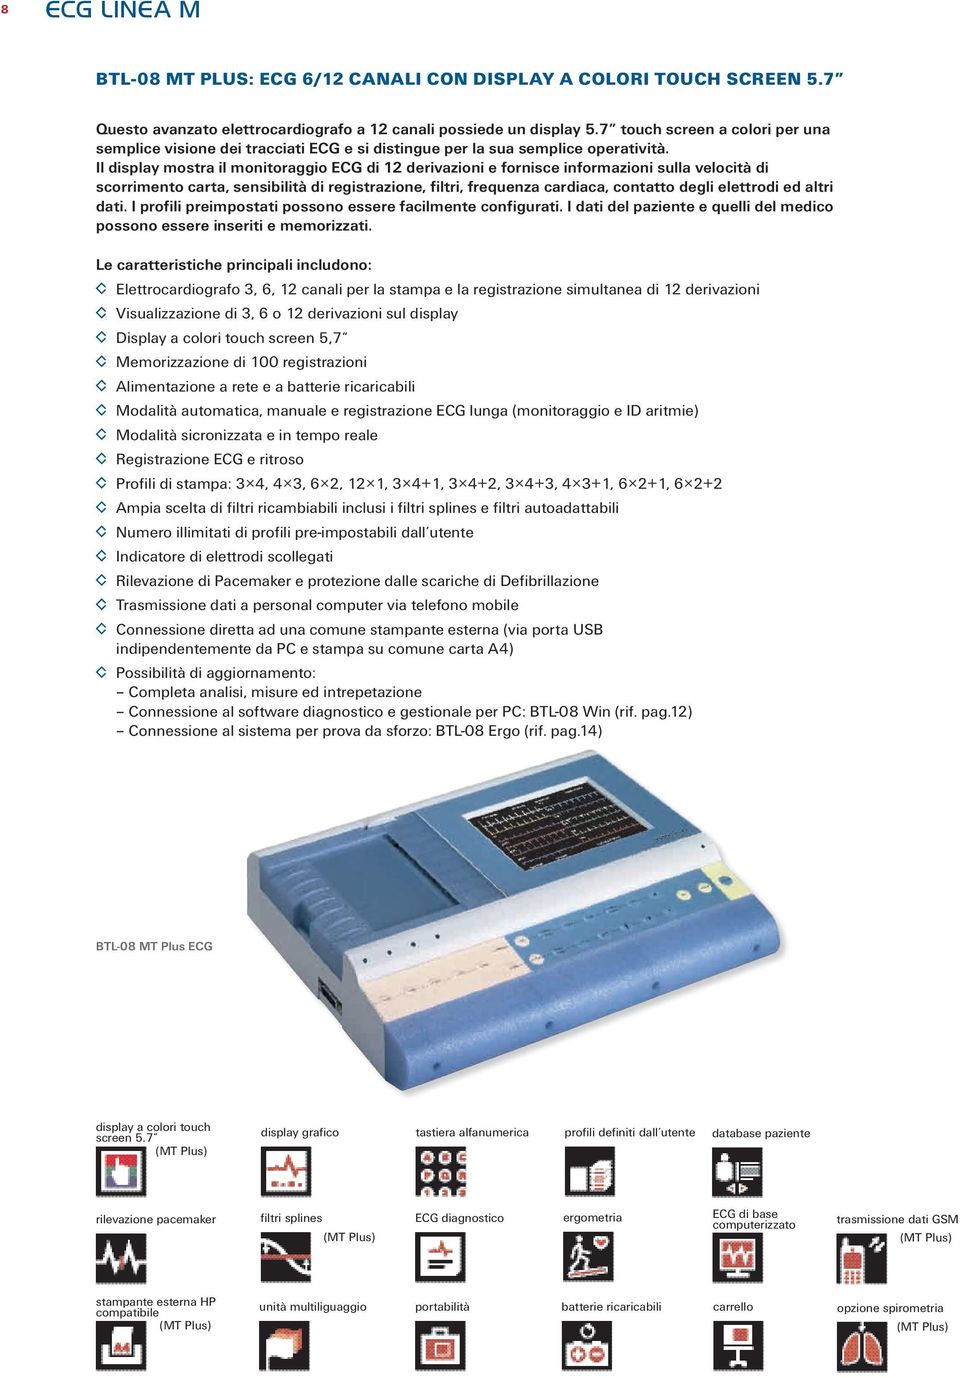 Il display mostra il monitoraggio ECG di 12 derivazioni e fornisce informazioni sulla velocità di scorrimento carta, sensibilità di registrazione, filtri, frequenza cardiaca, contatto degli elettrodi